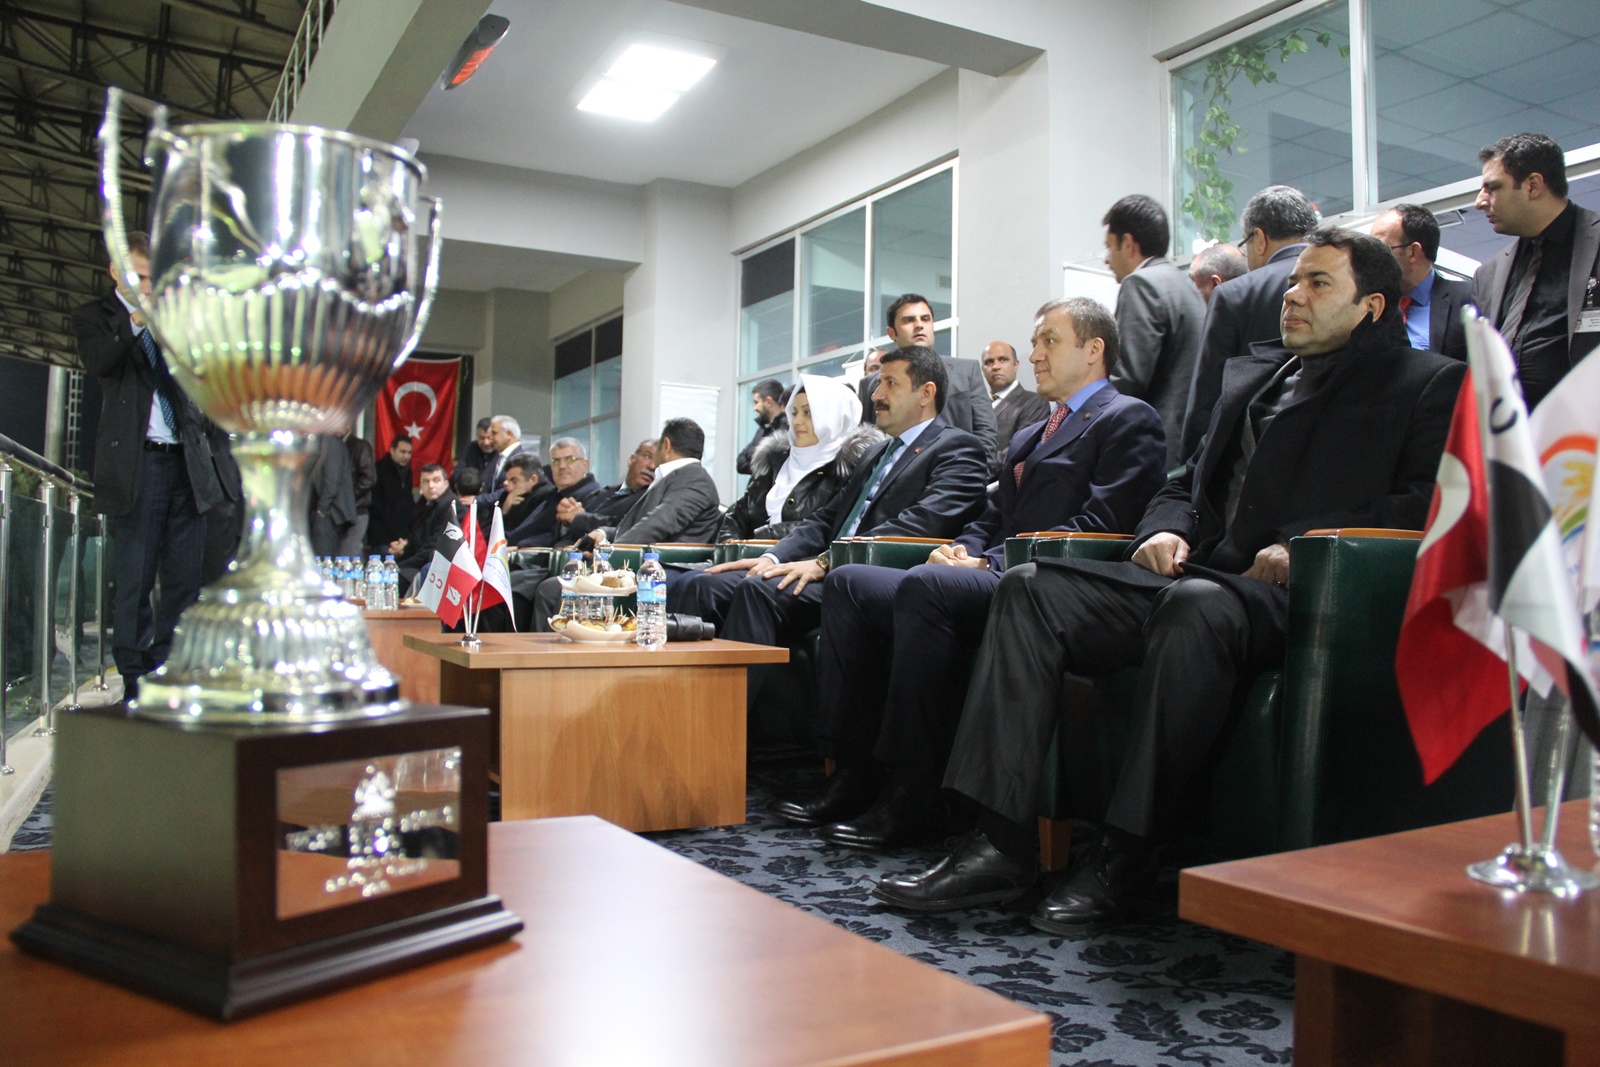 Eyyübiye Belediye Başkanlık Kupasını Ezmatra Kazandı